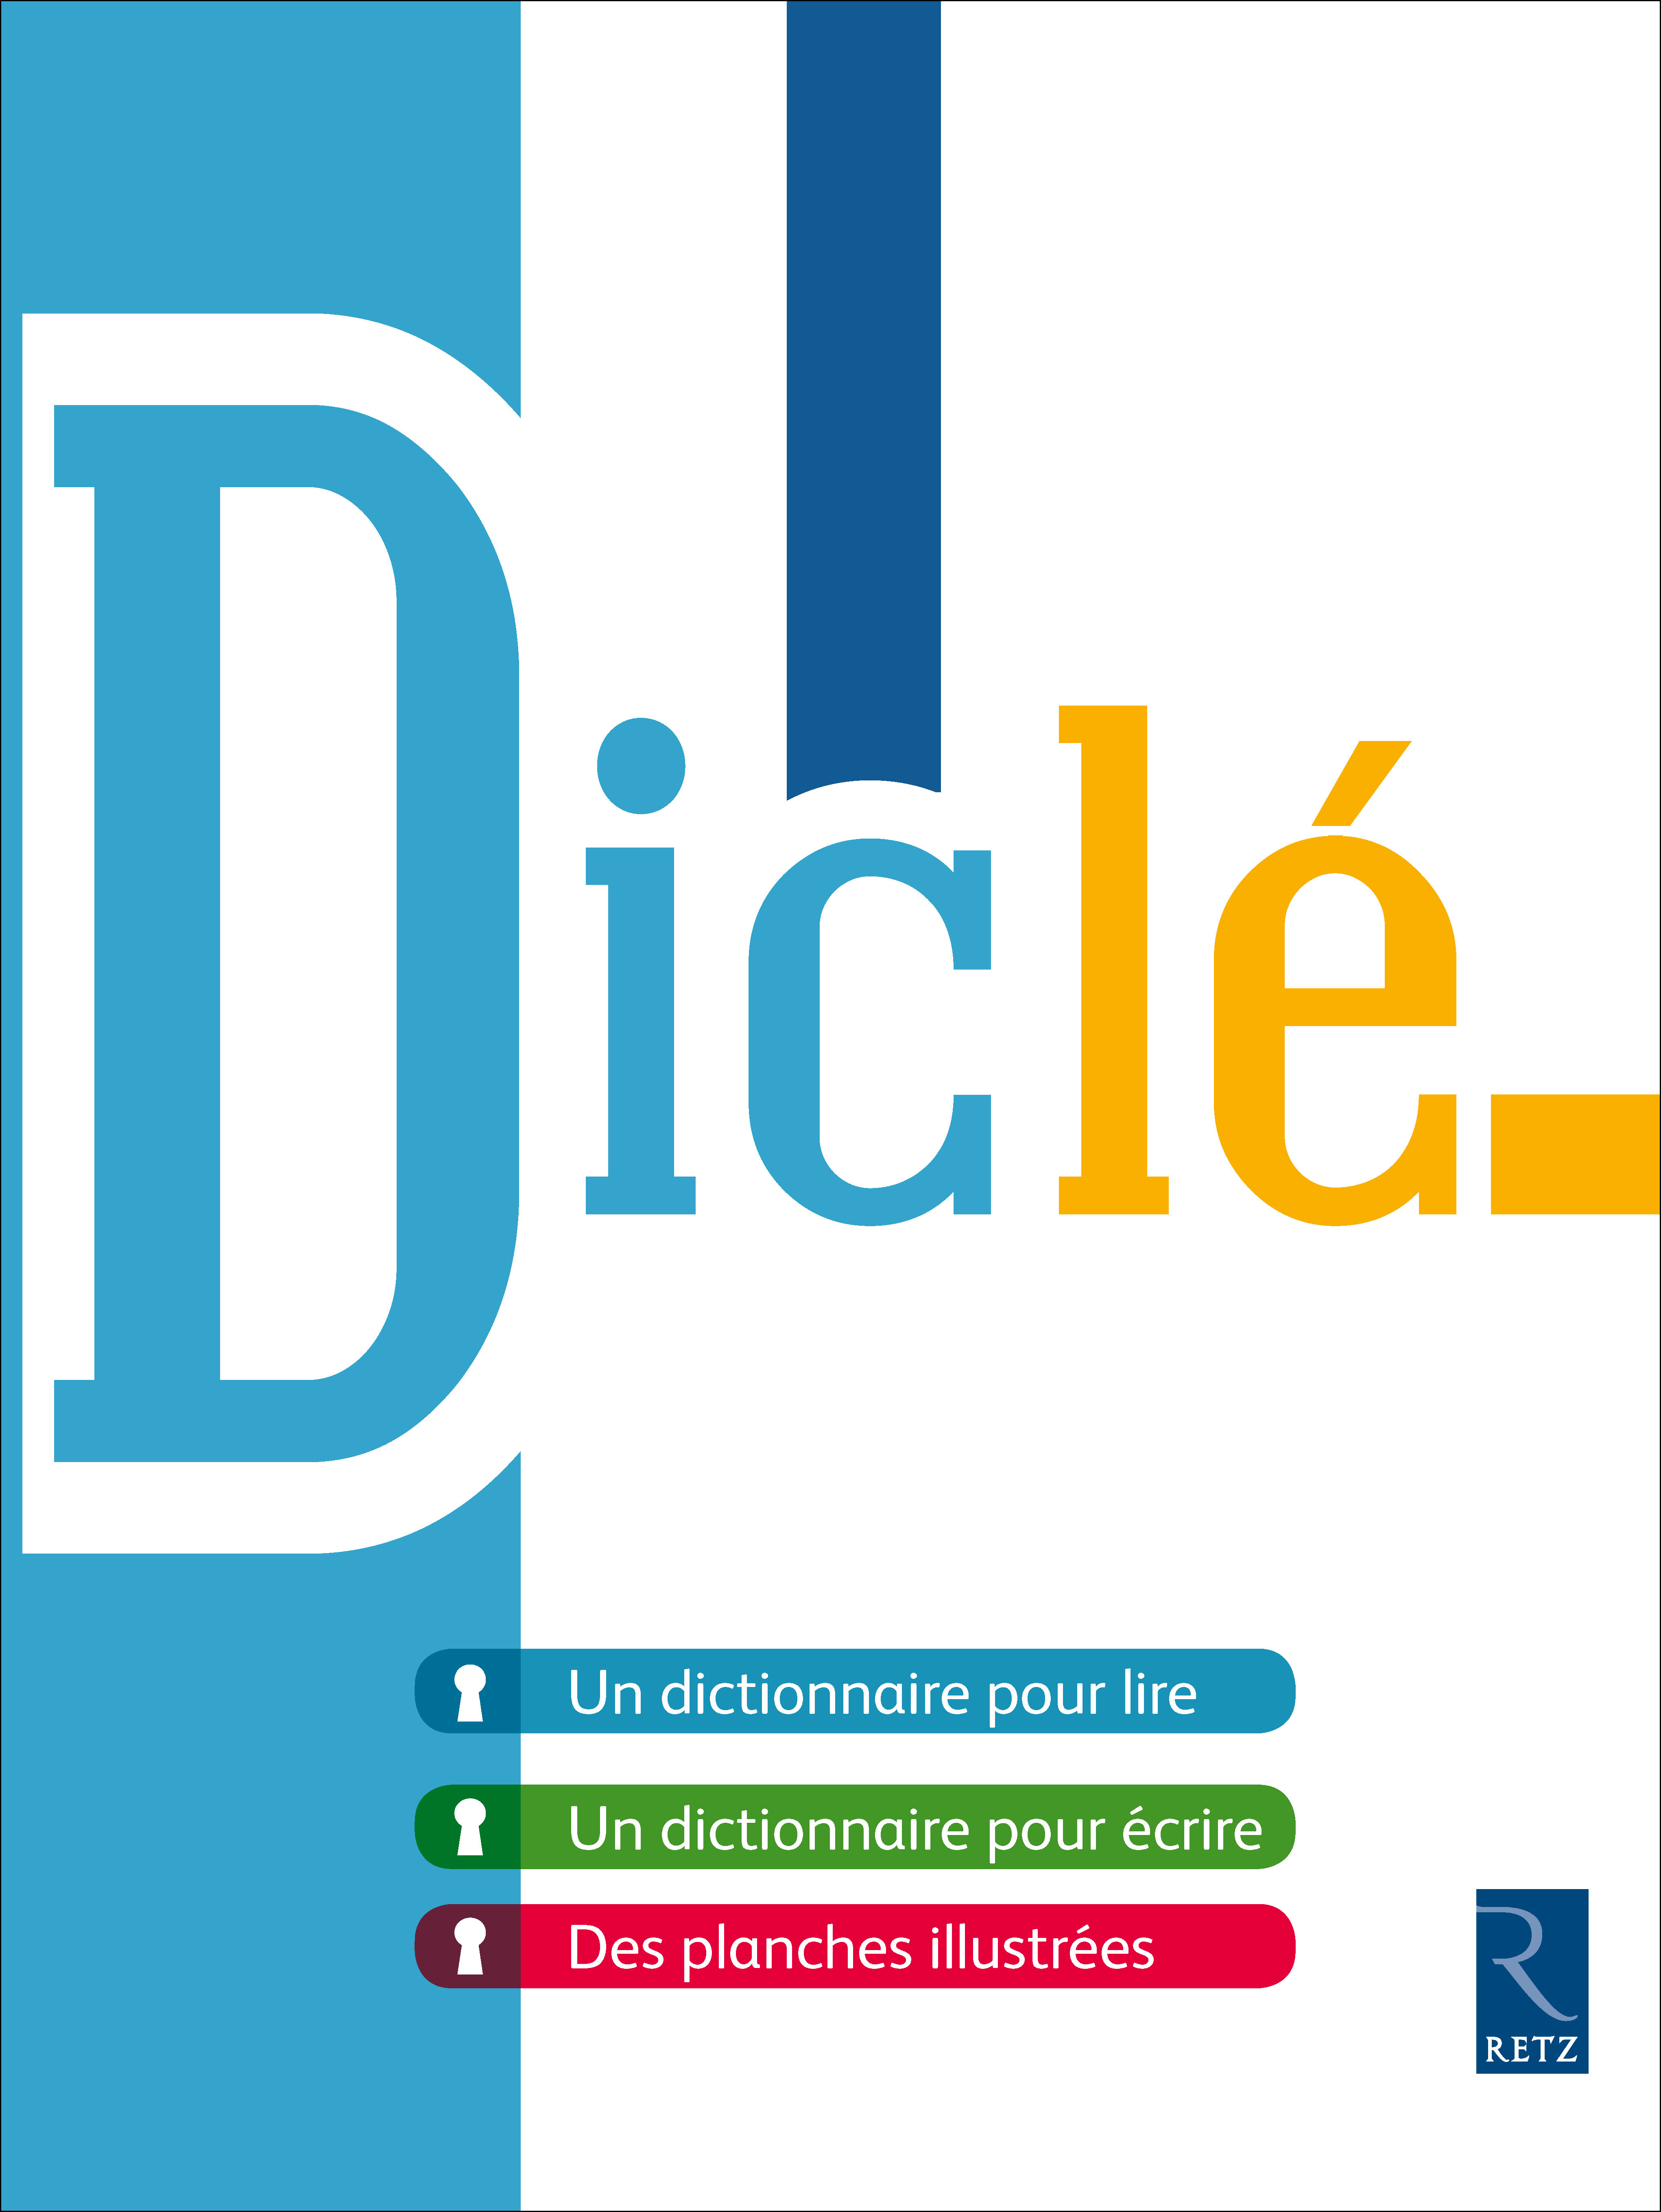 Dicl&eacute;
Dictionnaire pour lire et pour &eacute;crire